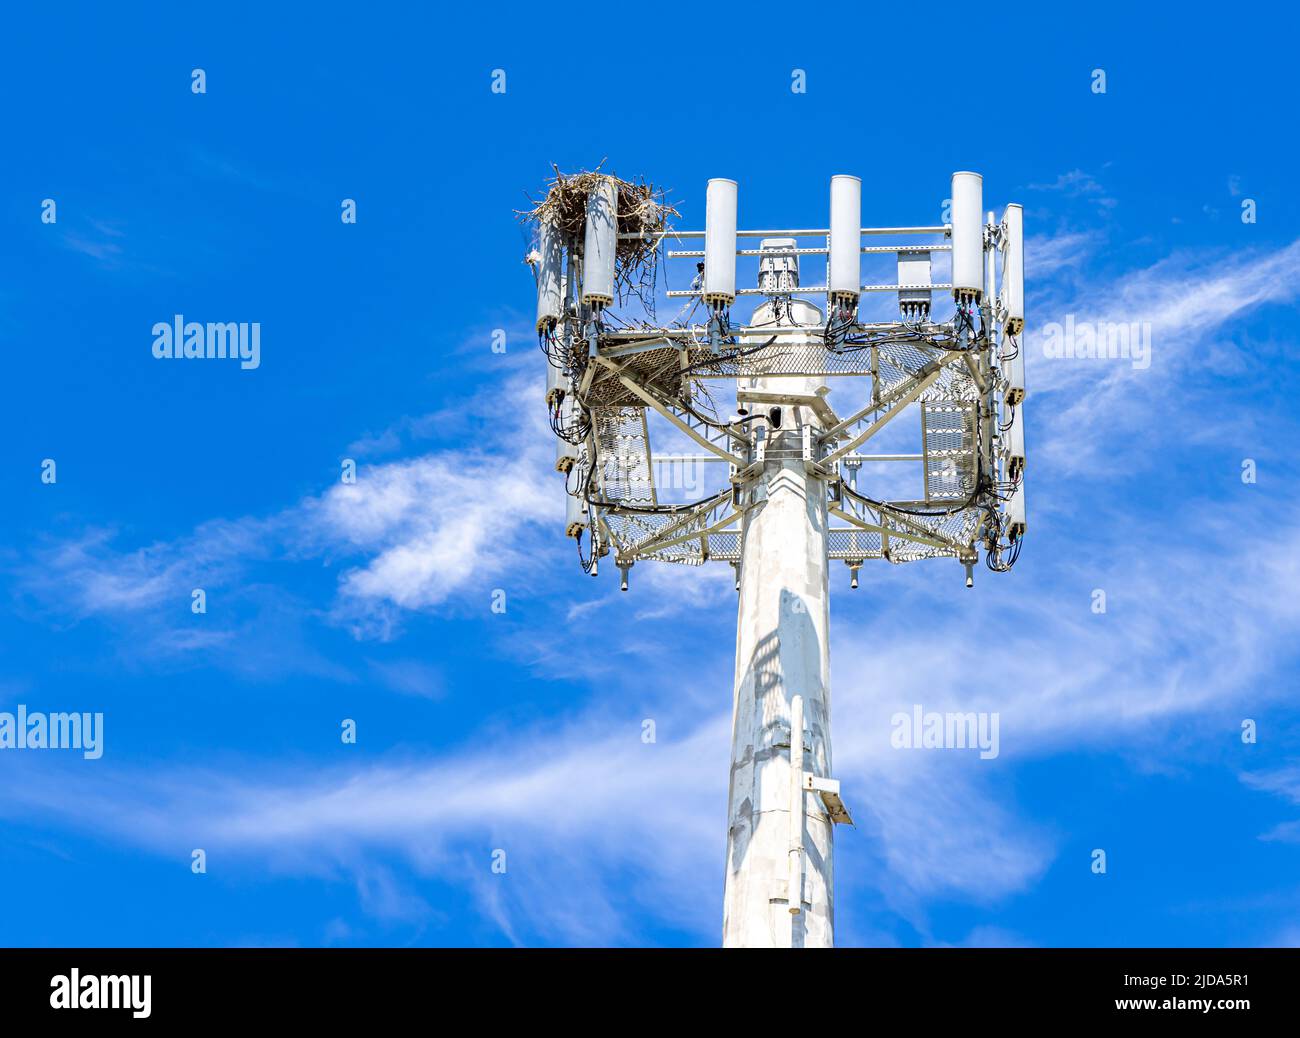 Das Ospry-Nest wurde oben auf einem Mobilfunkturm gebaut Stockfoto